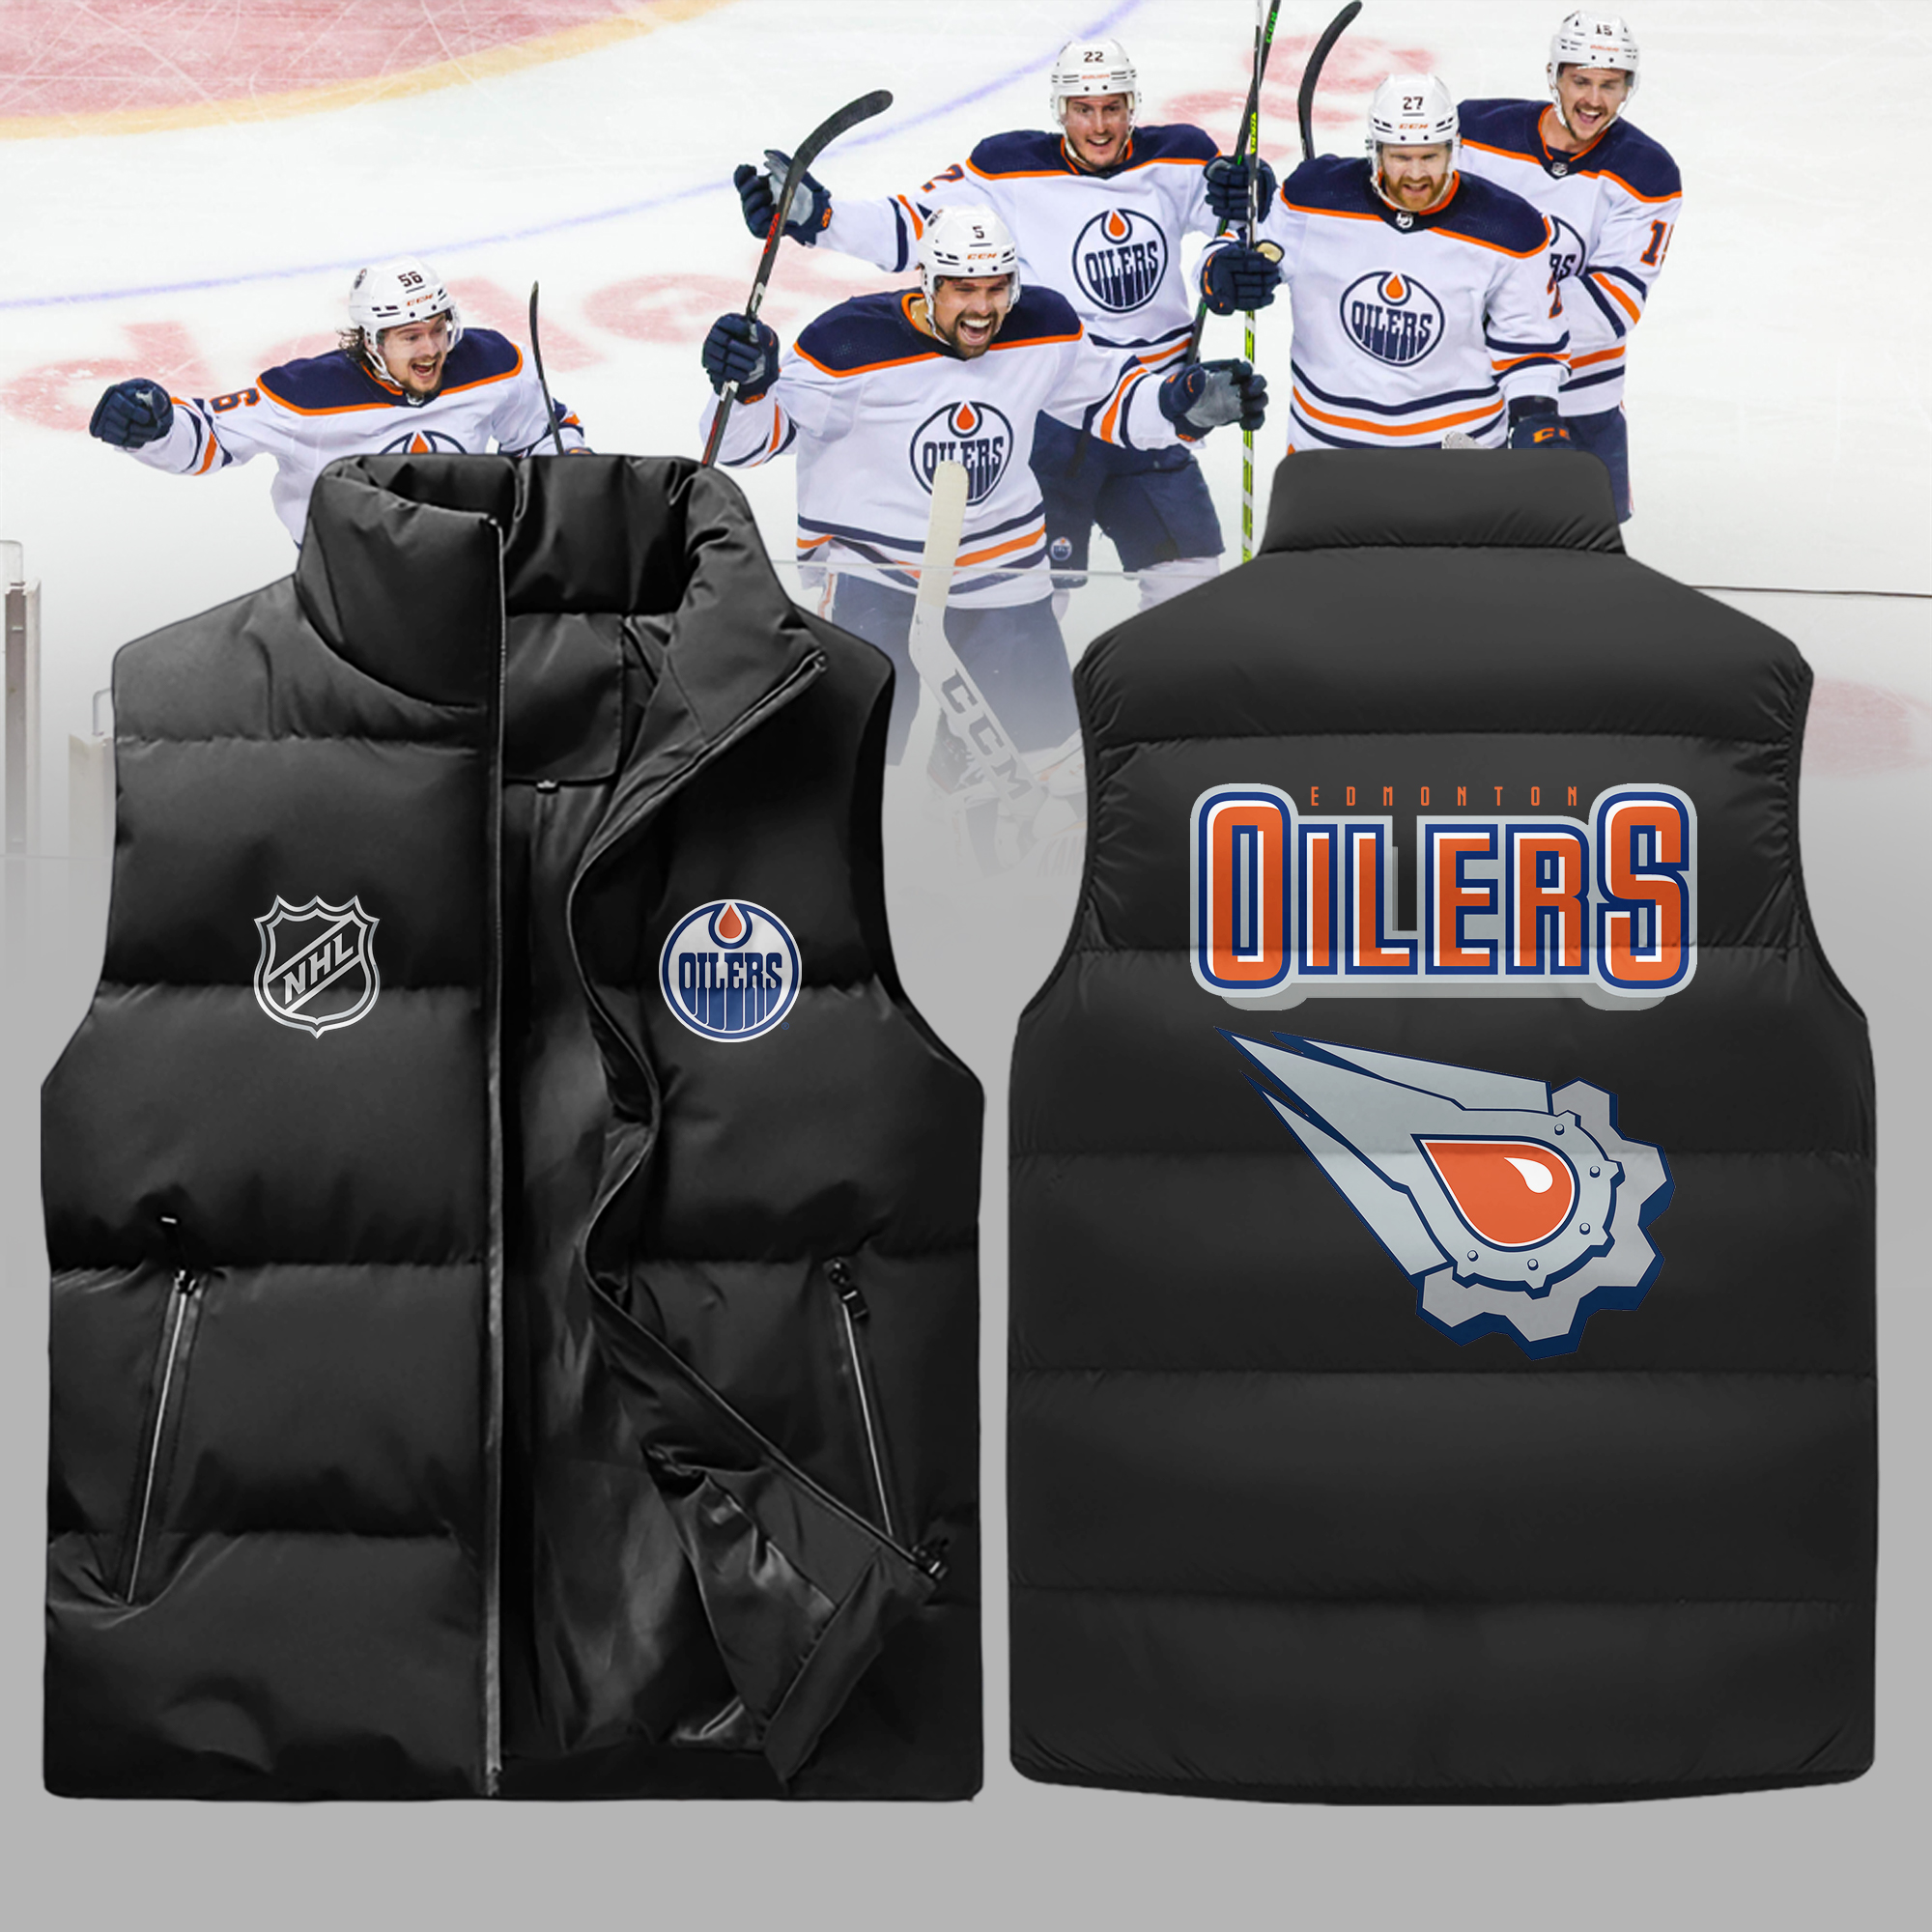 Edmonton Oilers Team Shop in NHL Fan Shop 